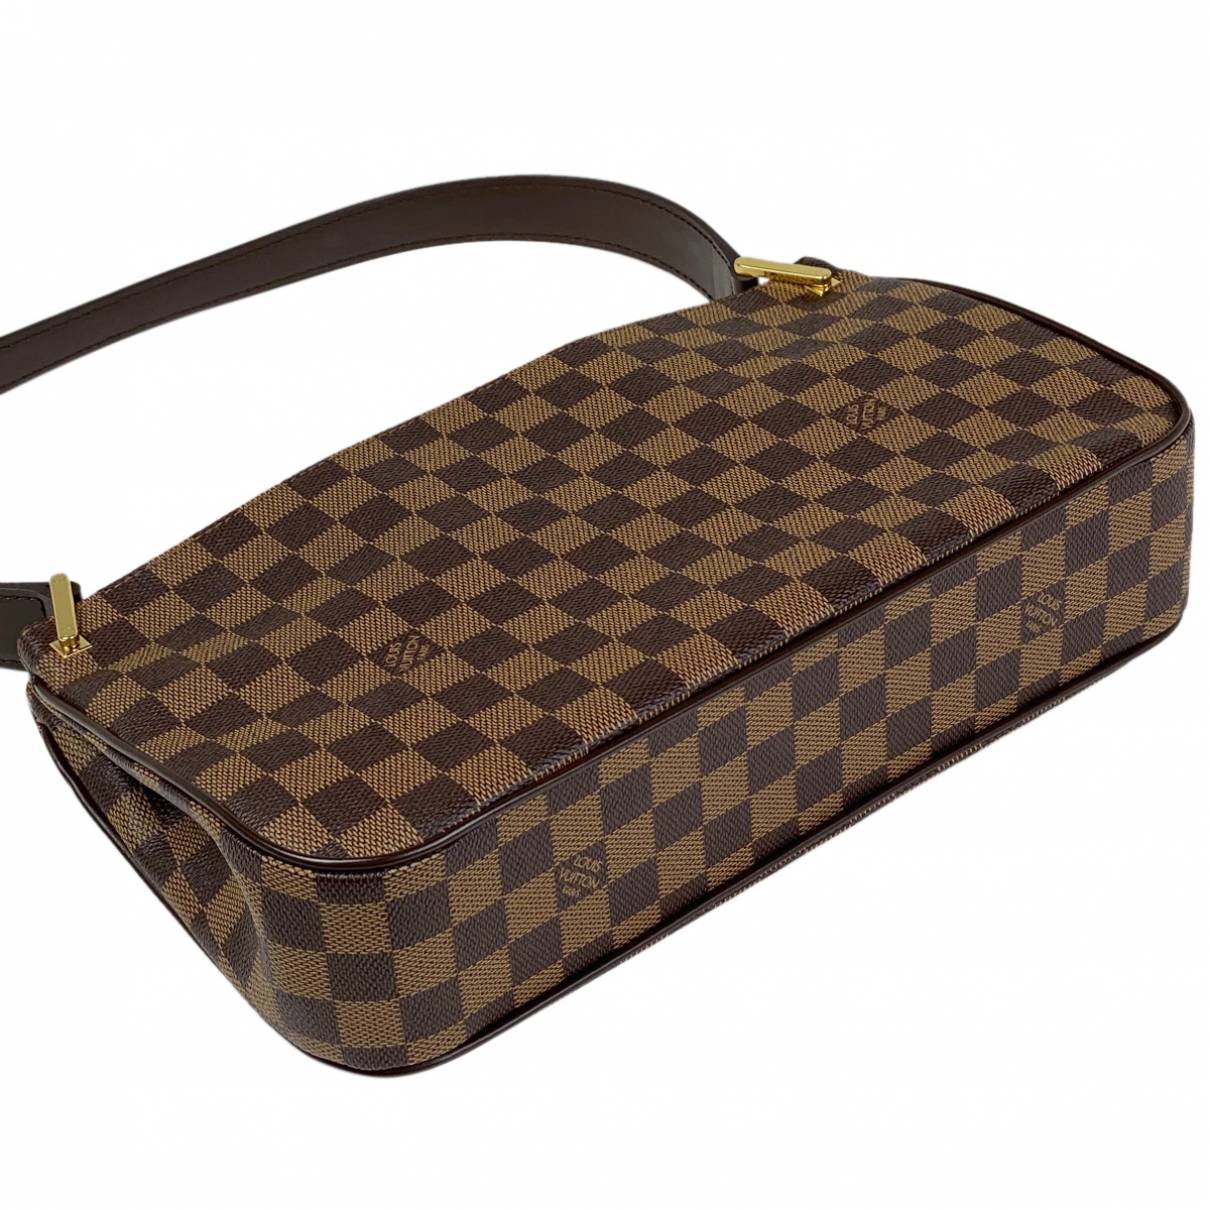 Buy Louis Vuitton Aubagne leather handbag online